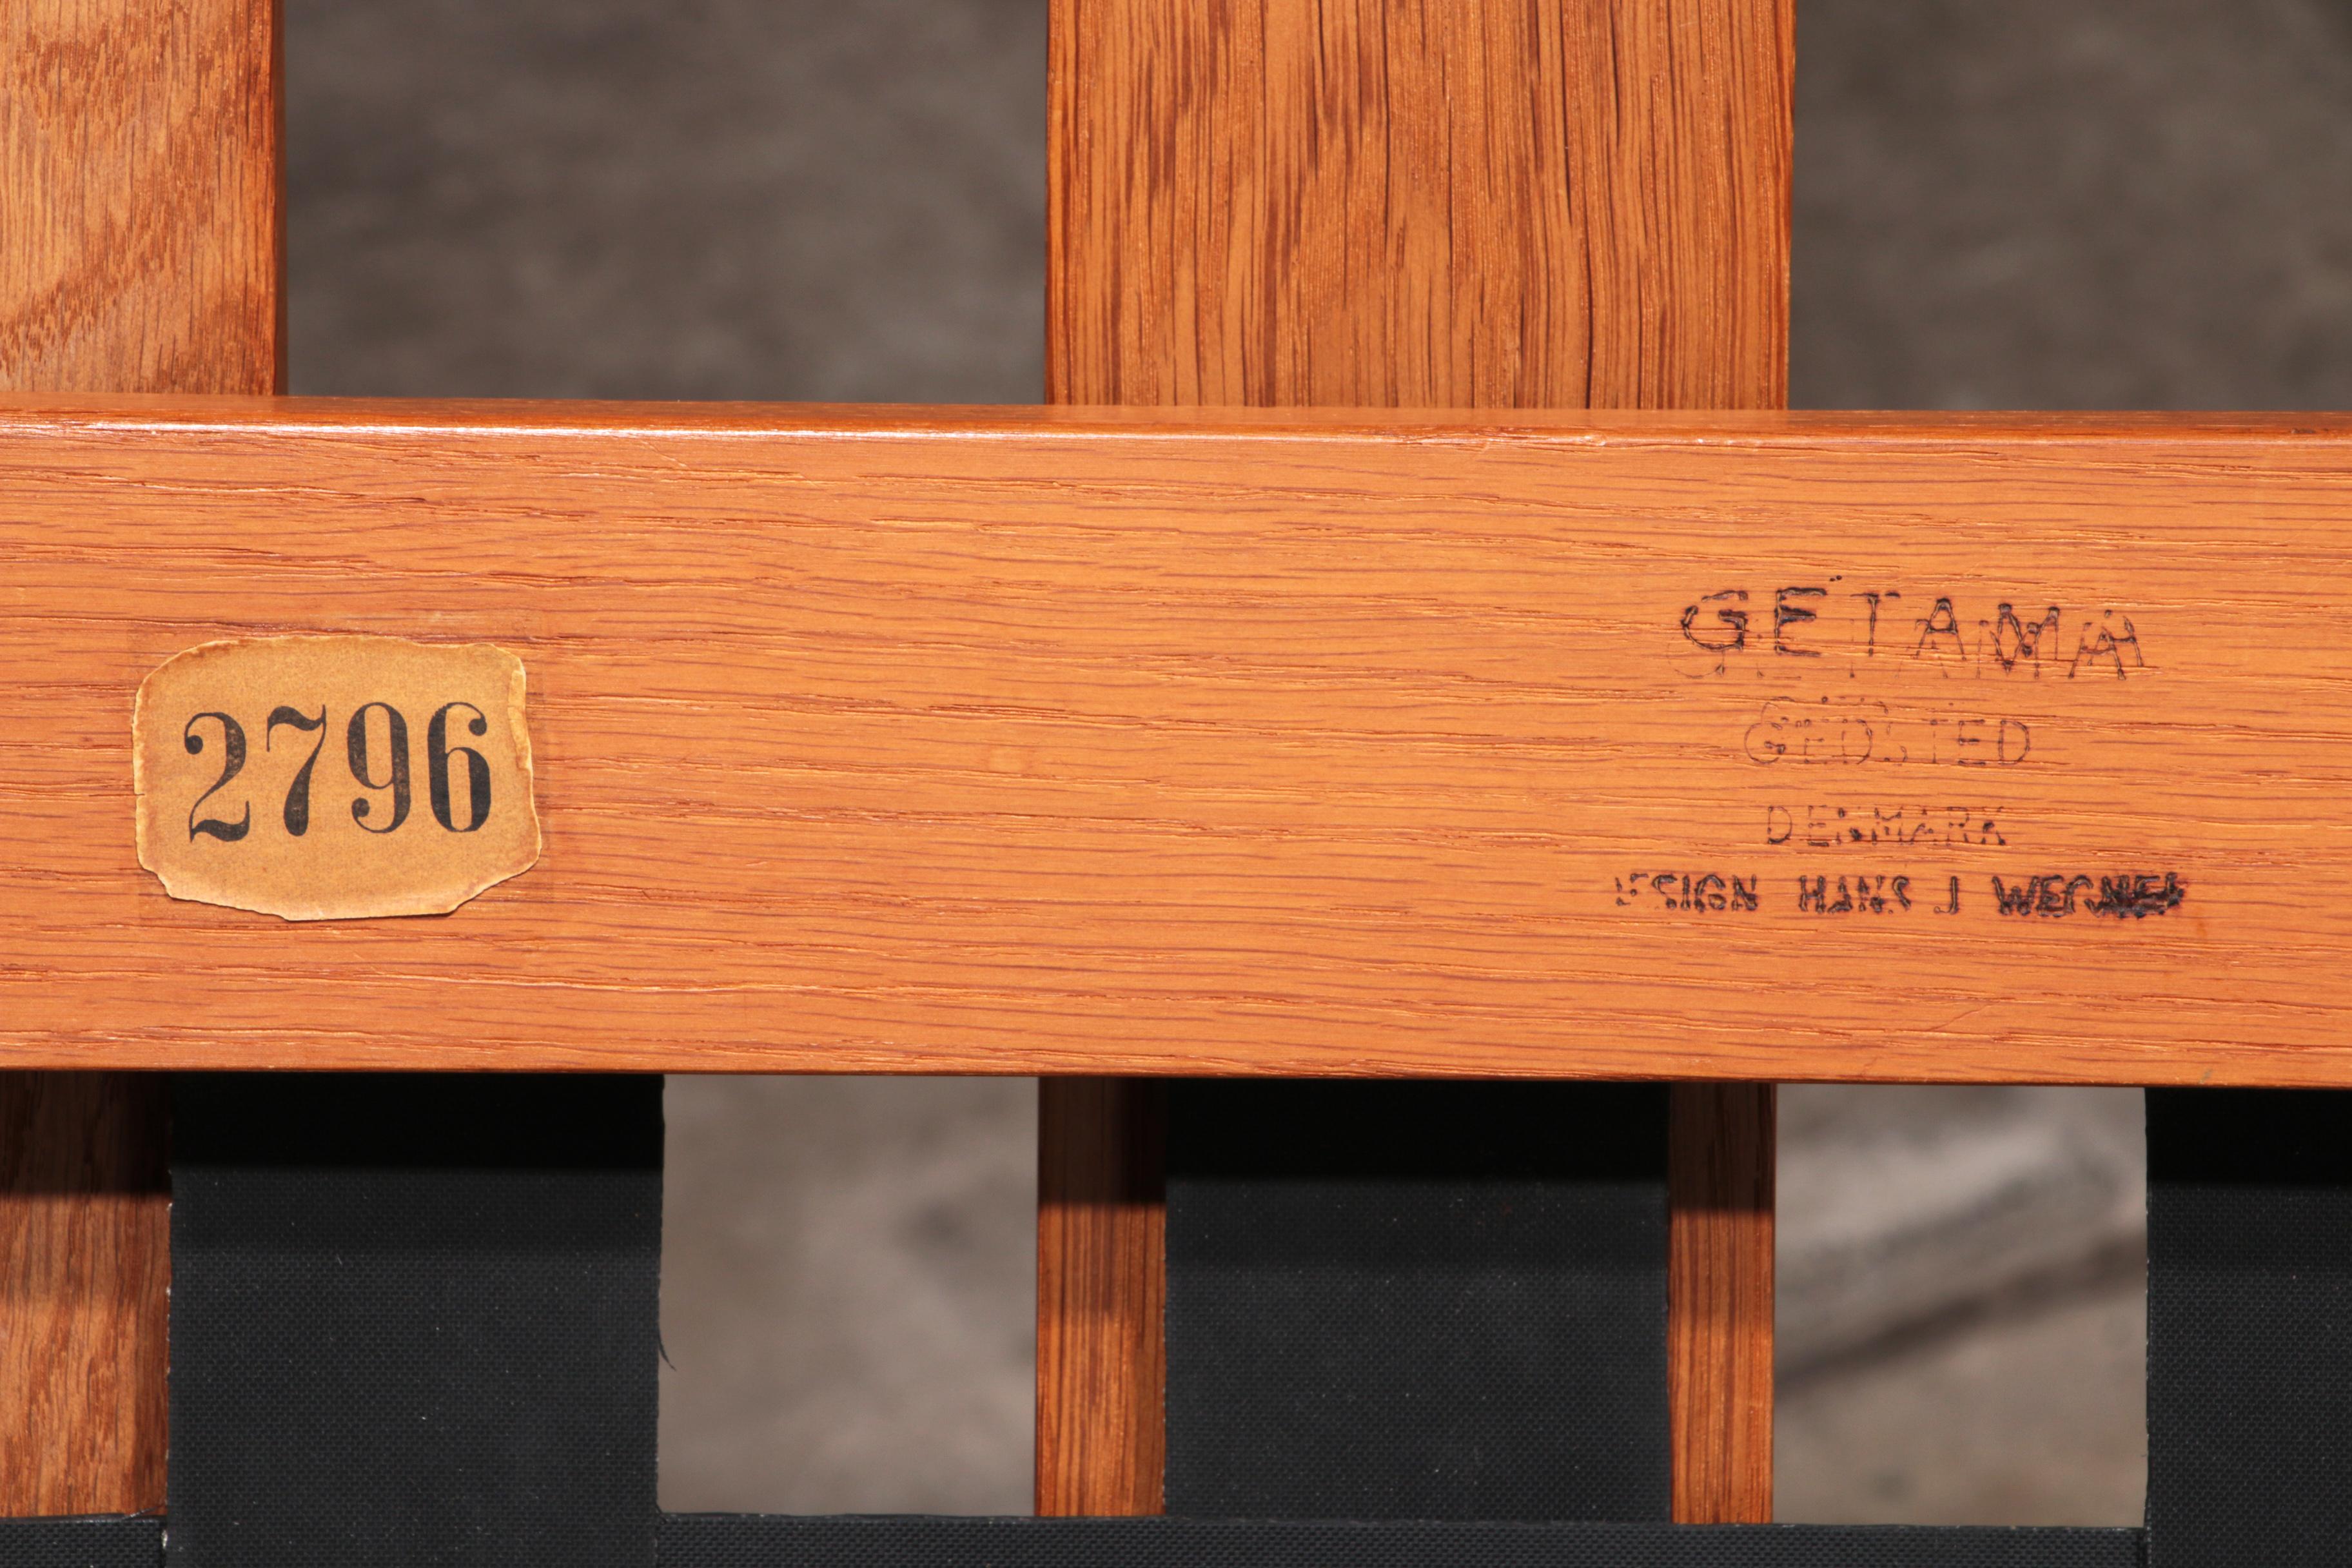 Hans J Wegner GE421 Getama Oak Relax Armchair with Adjustable Backrest For Sale 13